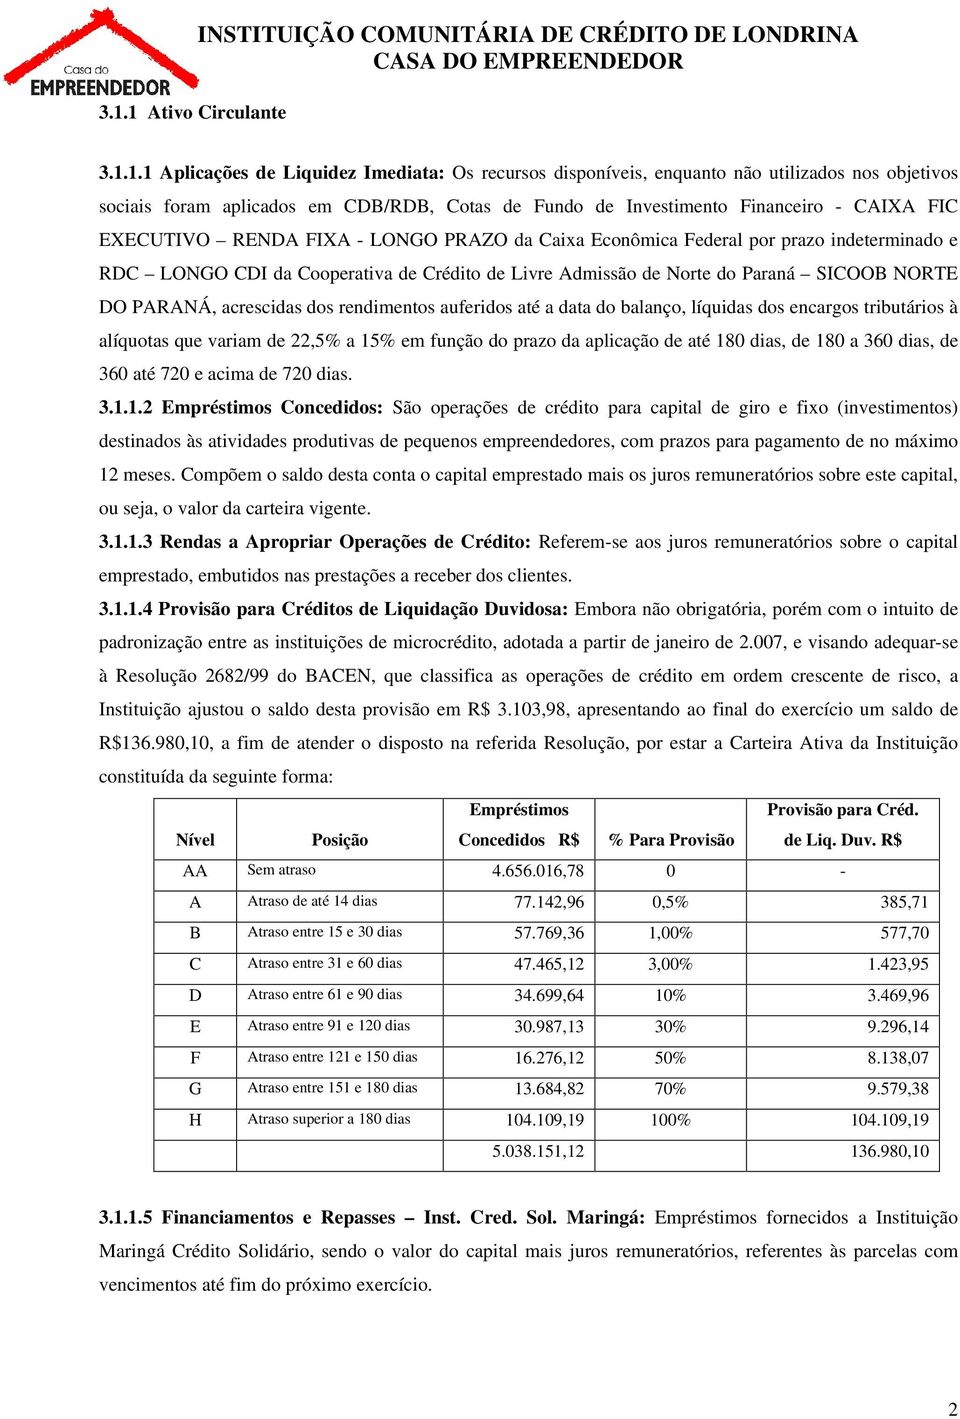 Livre Admissão de Norte do Paraná SICOOB NORTE DO PARANÁ, acrescidas dos rendimentos auferidos até a data do balanço, líquidas dos encargos tributários à alíquotas que variam de 22,5% a 15% em função